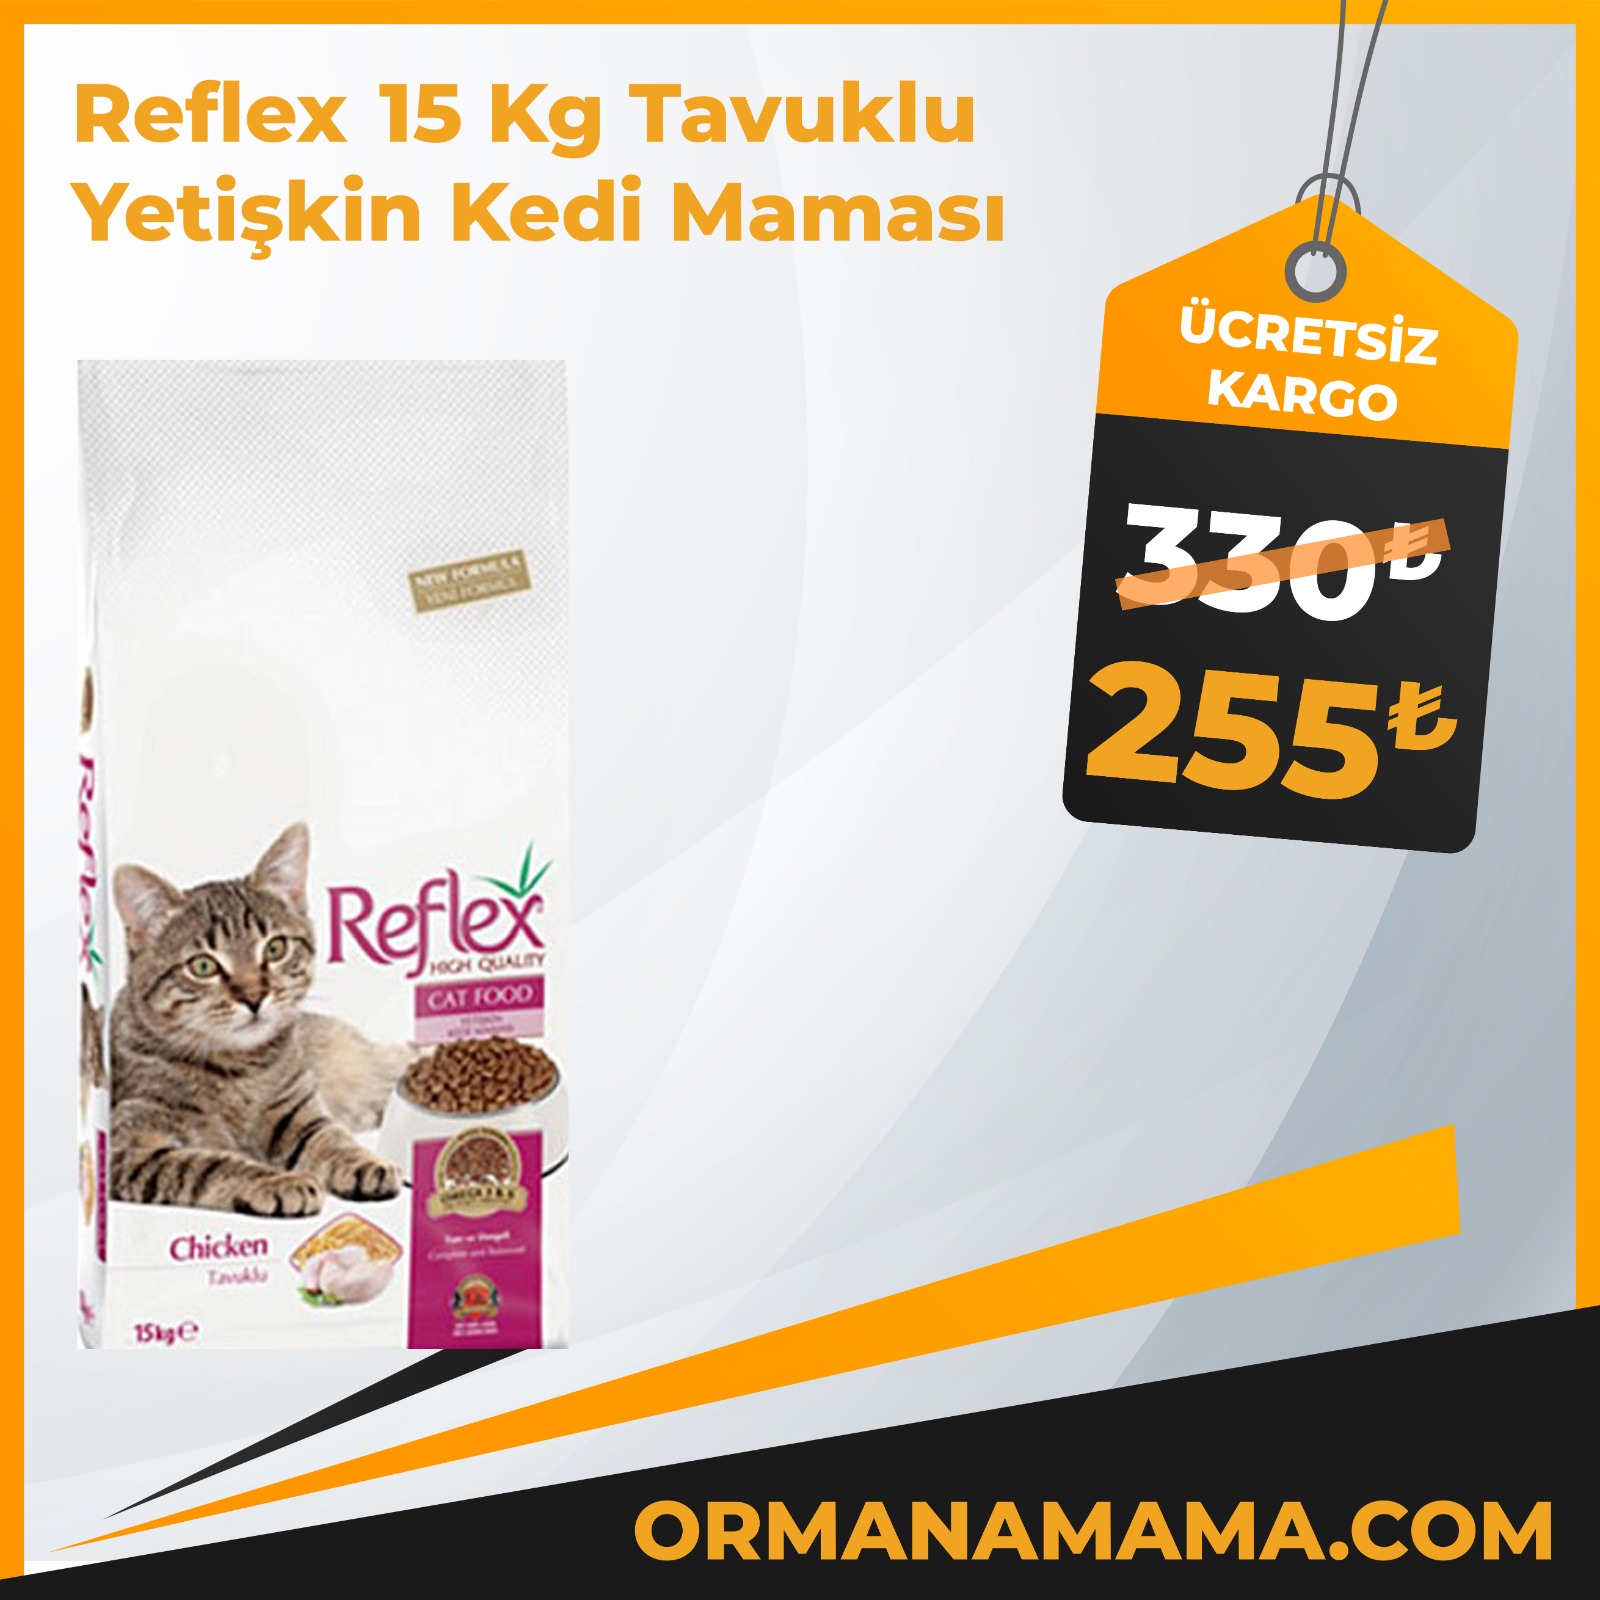 Reflex 15 Kg Tavuklu Yetişkin Kedi Maması